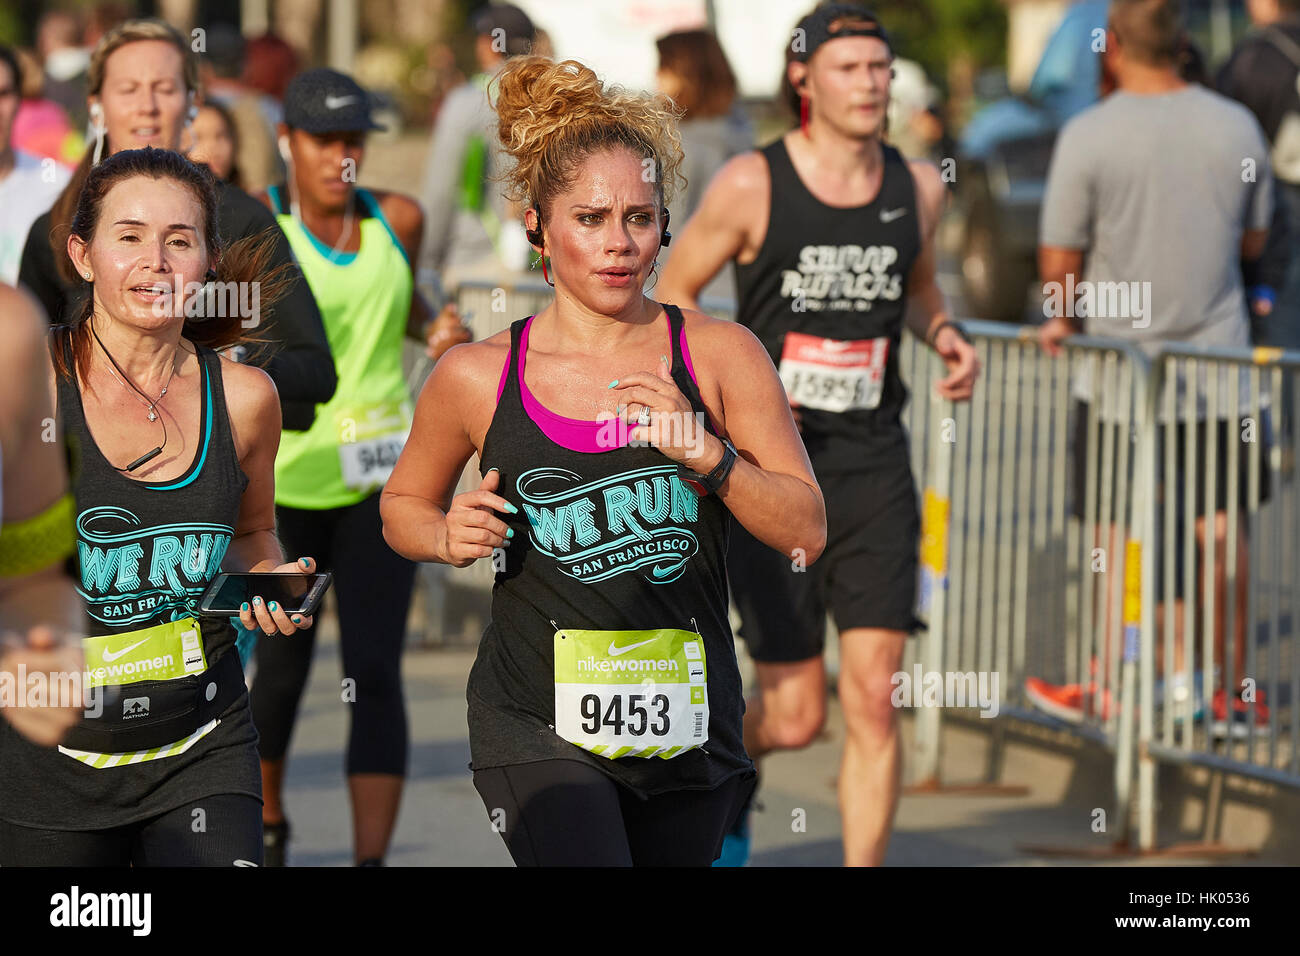 Weibliche lateinamerikanischen Athlet nähert sich die Ziellinie In der Nike Woman Halbmarathon, San Francisco, 2015. Stockfoto